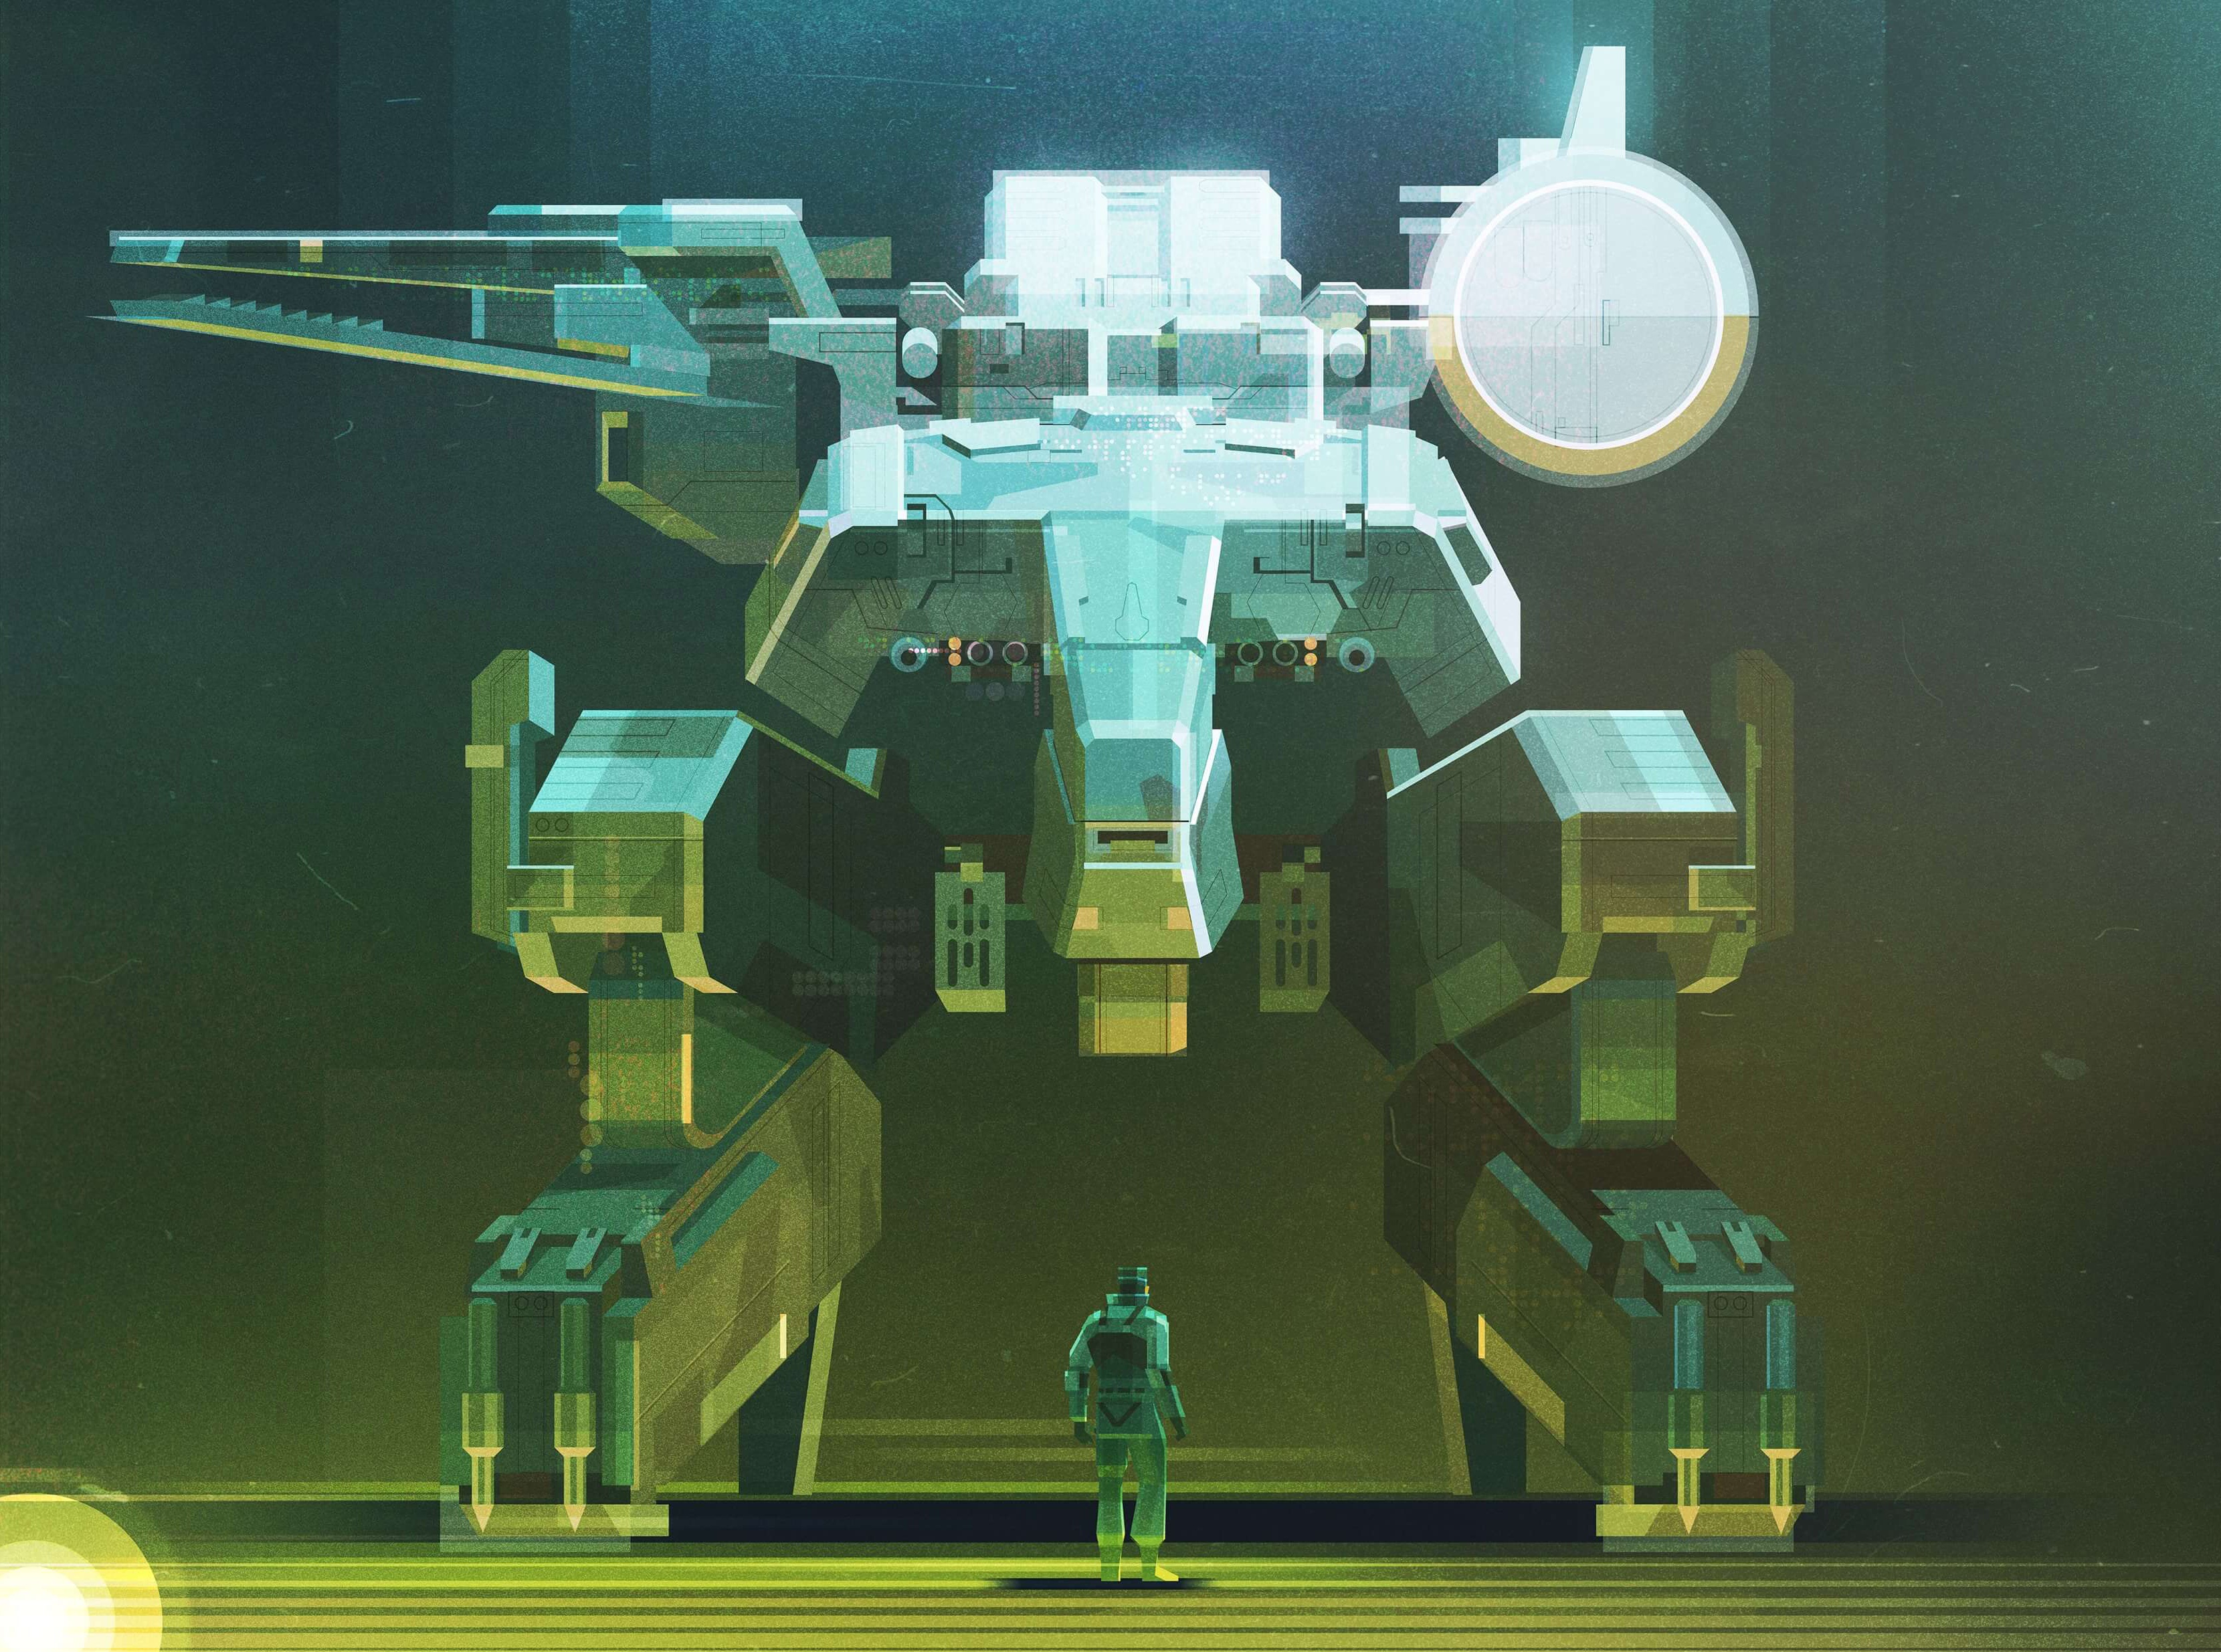 Mech Futuristic Science Fiction Illustration Digital Art Metal Gear Metal Gear Solid 2 Green Solid S 3320x2470